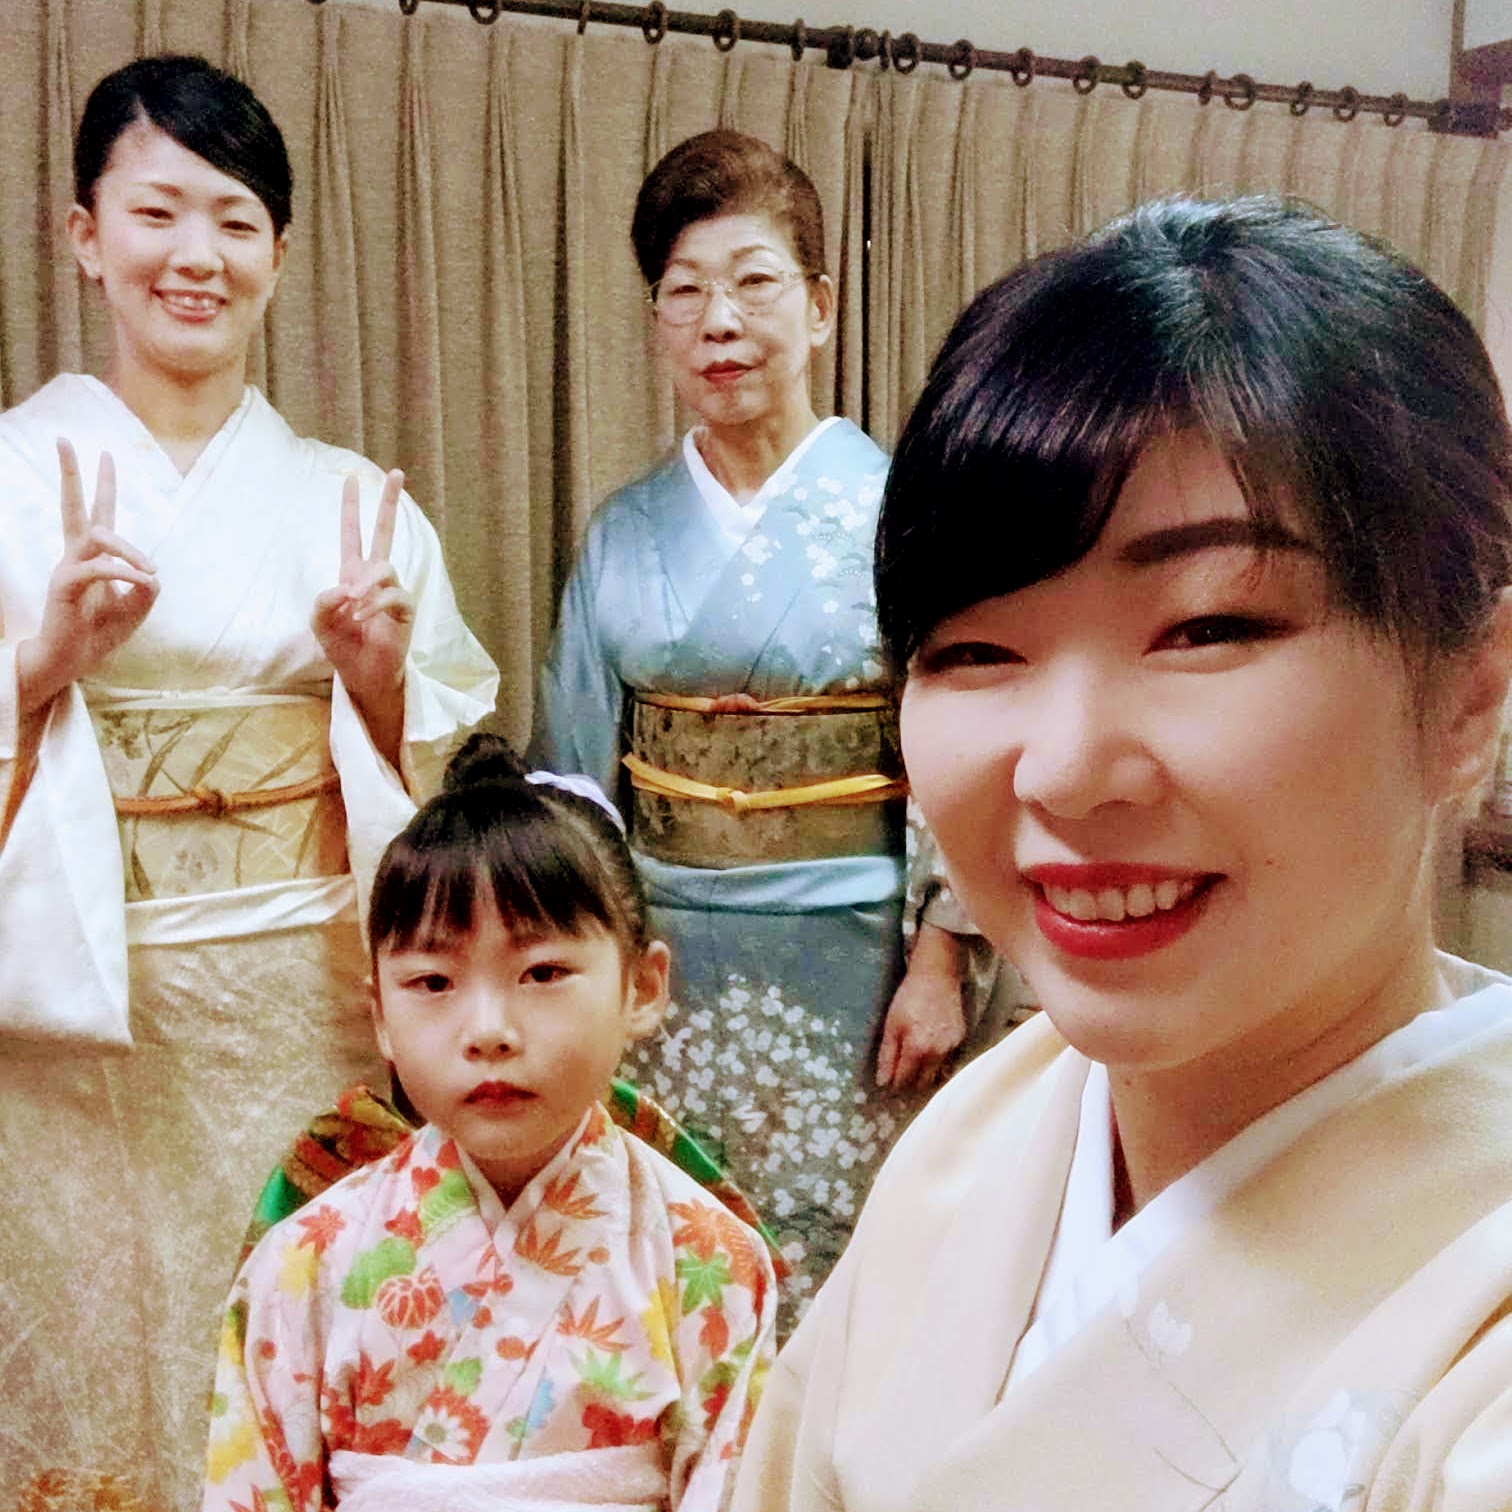 日本遺産開成館で箏曲演奏をする佳寿美会のメンバー